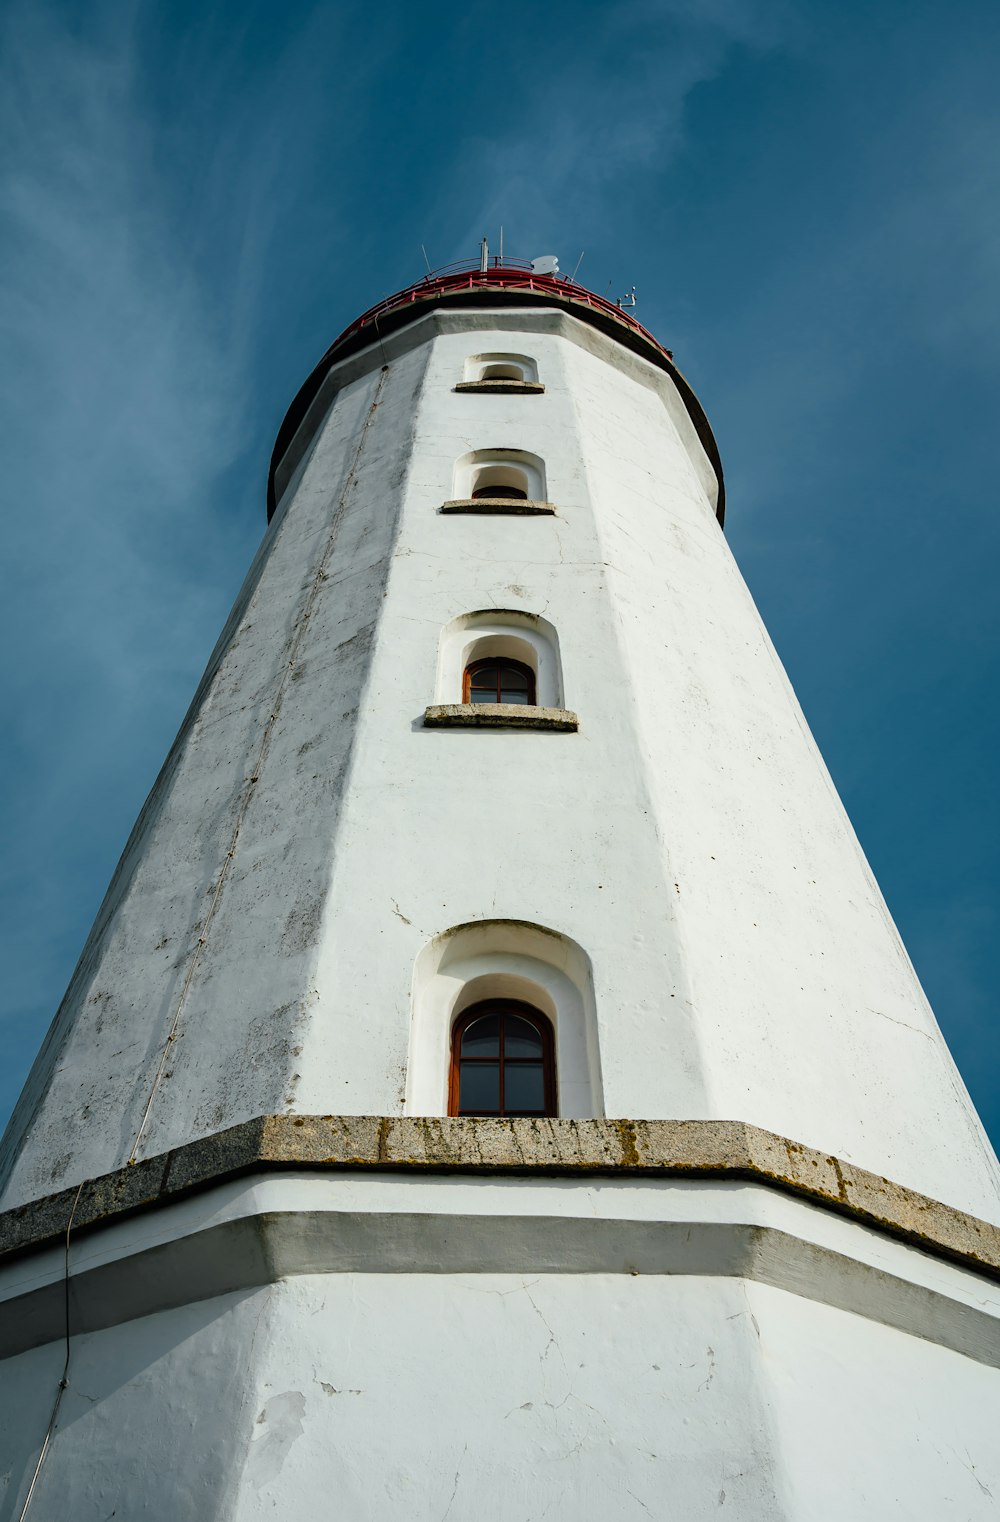 Una torre blanca alta con una parte superior roja